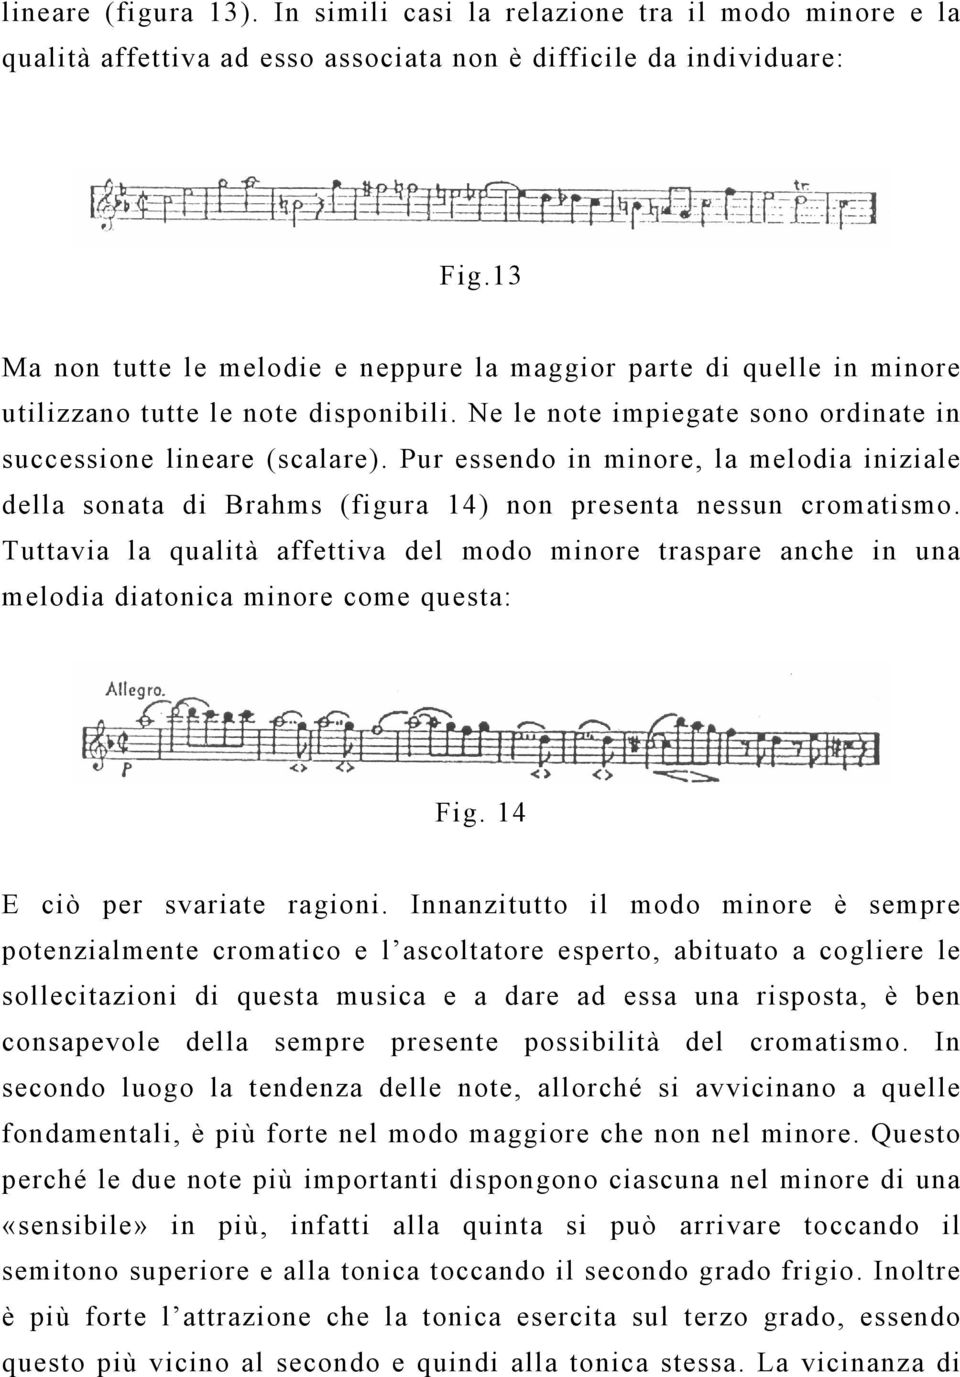 Pur essendo in minore, la melodia iniziale della sonata di Brahms (figura 14) non presenta nessun cromatismo.